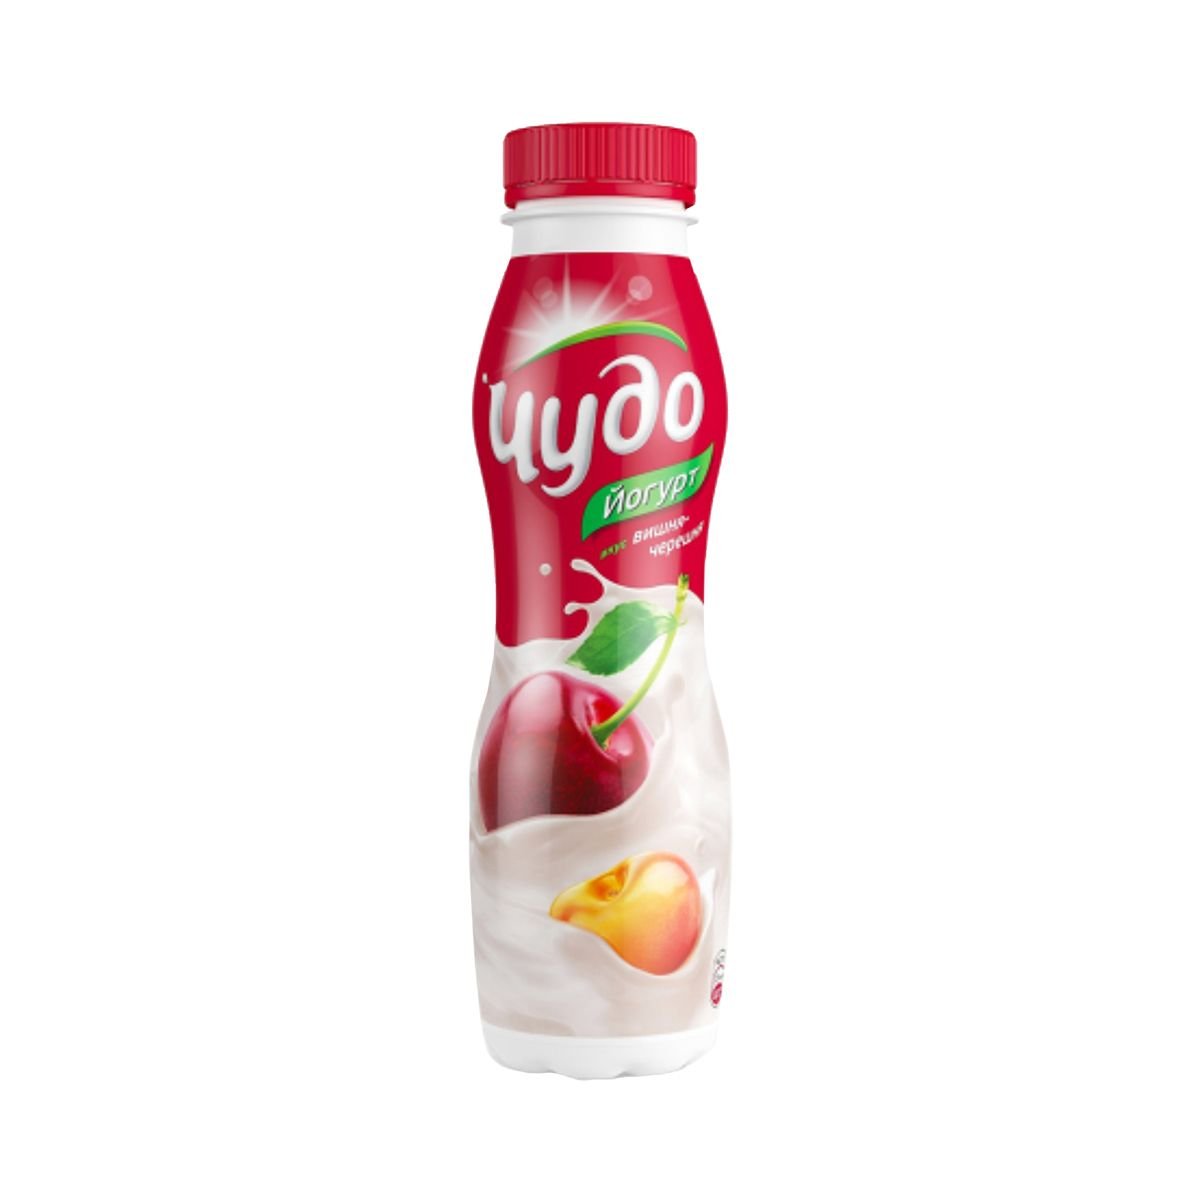 Питьевая товар. Питьевой йогурт чудо персик-манго-дыня 2.4%, 270 г. Йогурт пит. "Чудо" персик-абрикос 2,4% 270г. Йогурт питьевой чудо 270 гр. Йогурт чудо 270г вишня-черешня.